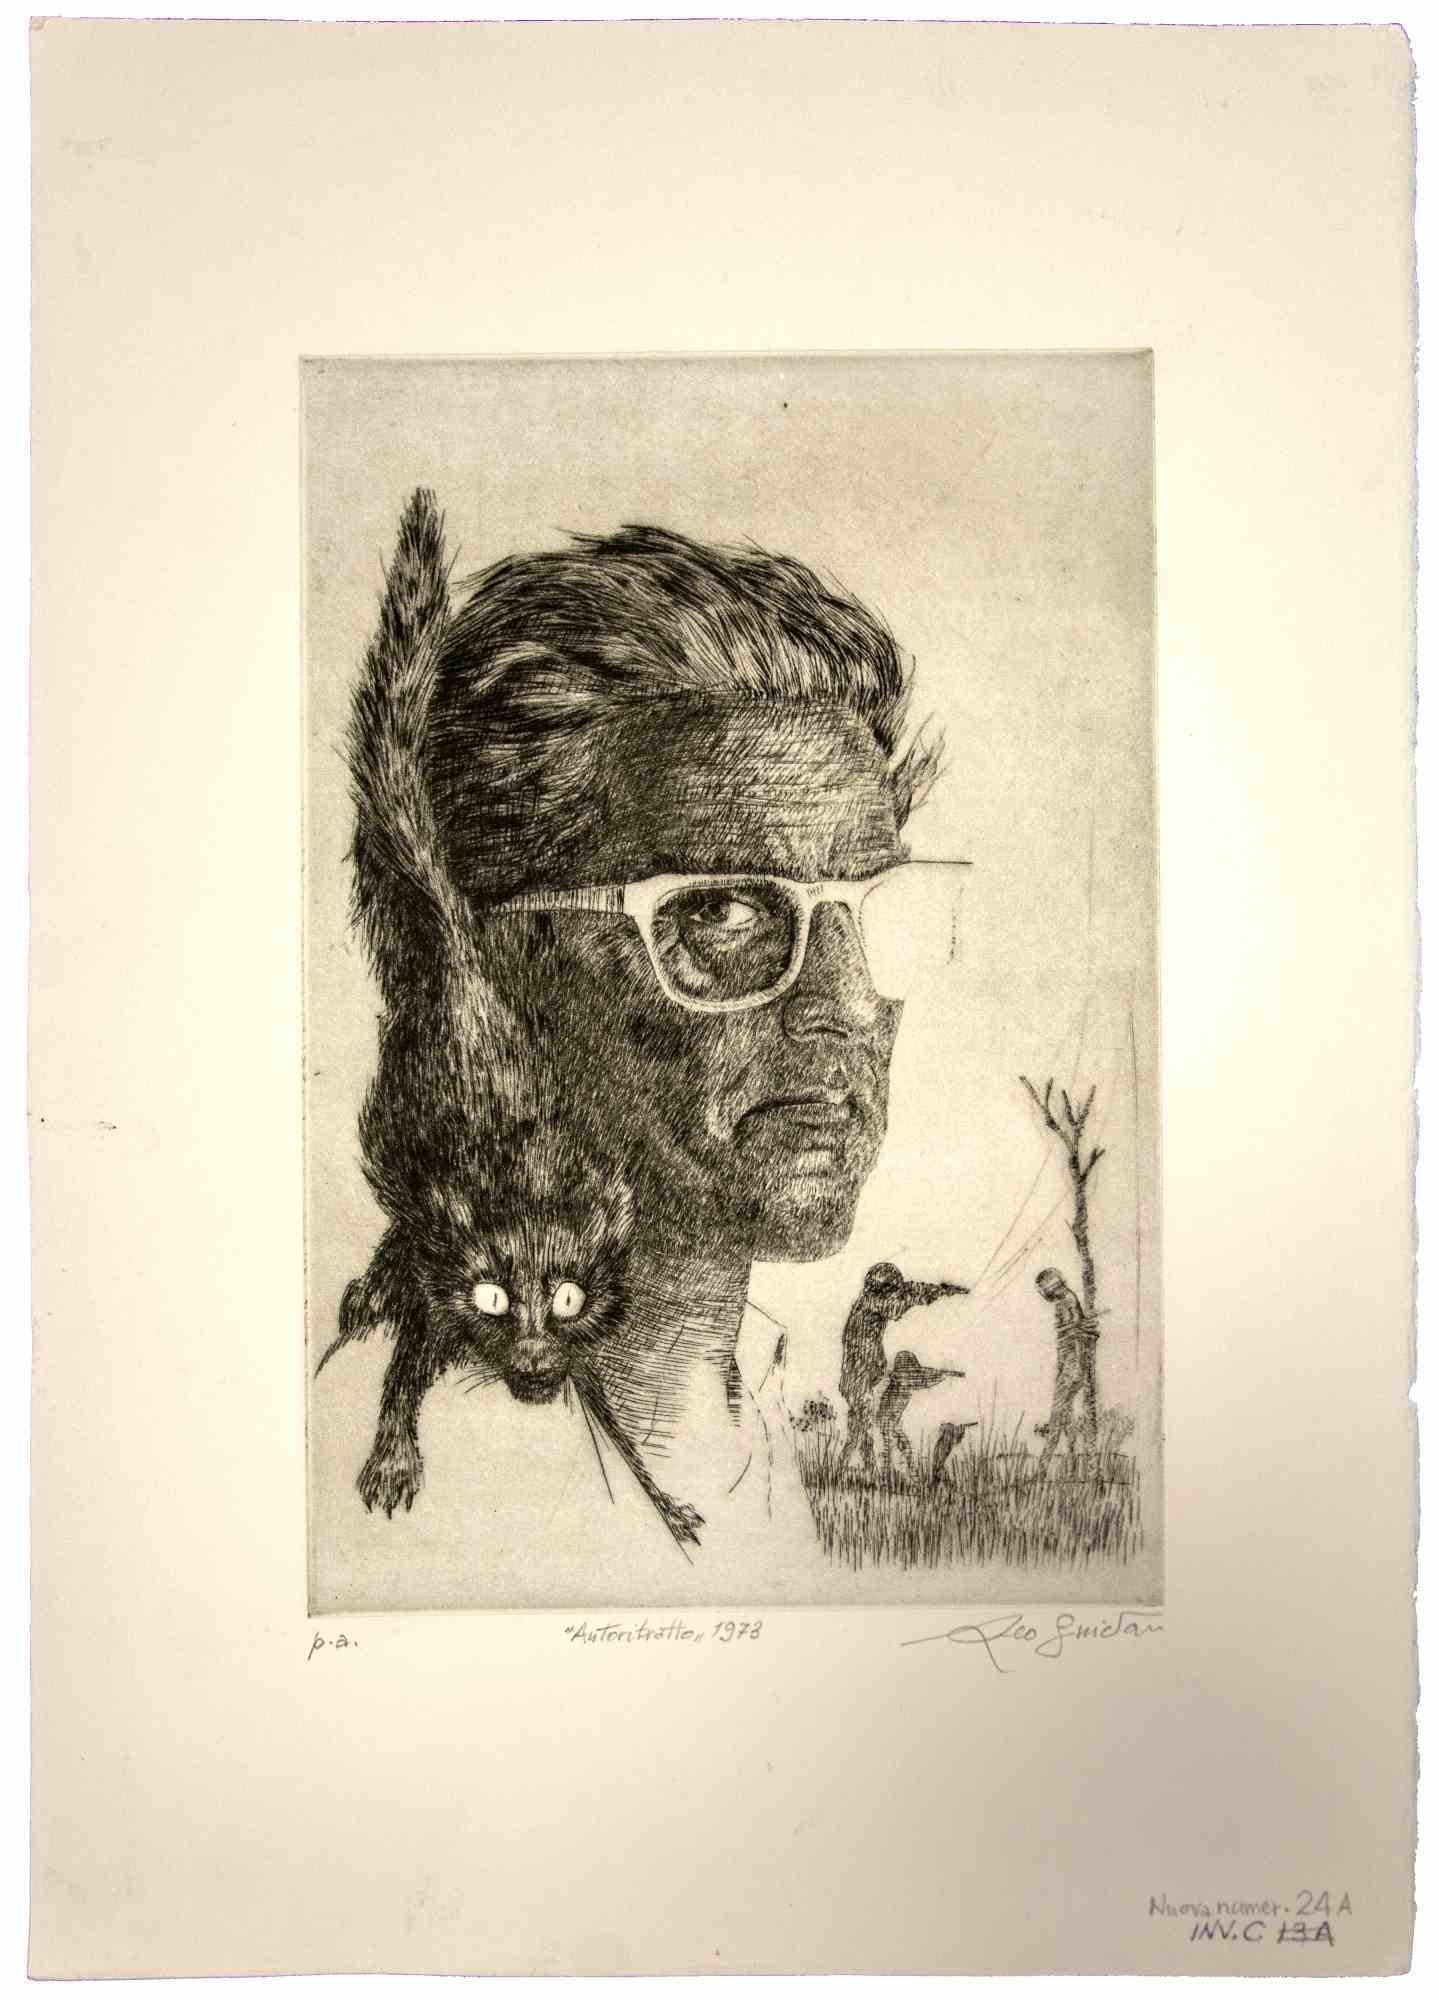 Autoportrait est une œuvre d'art originale réalisée  en 1965  par l'artiste contemporain italien  Leo Guida  (1992 - 2017).

Eau-forte et aquatinte sur papier couleur ivoire, avec un carton (50 x 35 cm)
 
Signé et daté à la main dans la marge